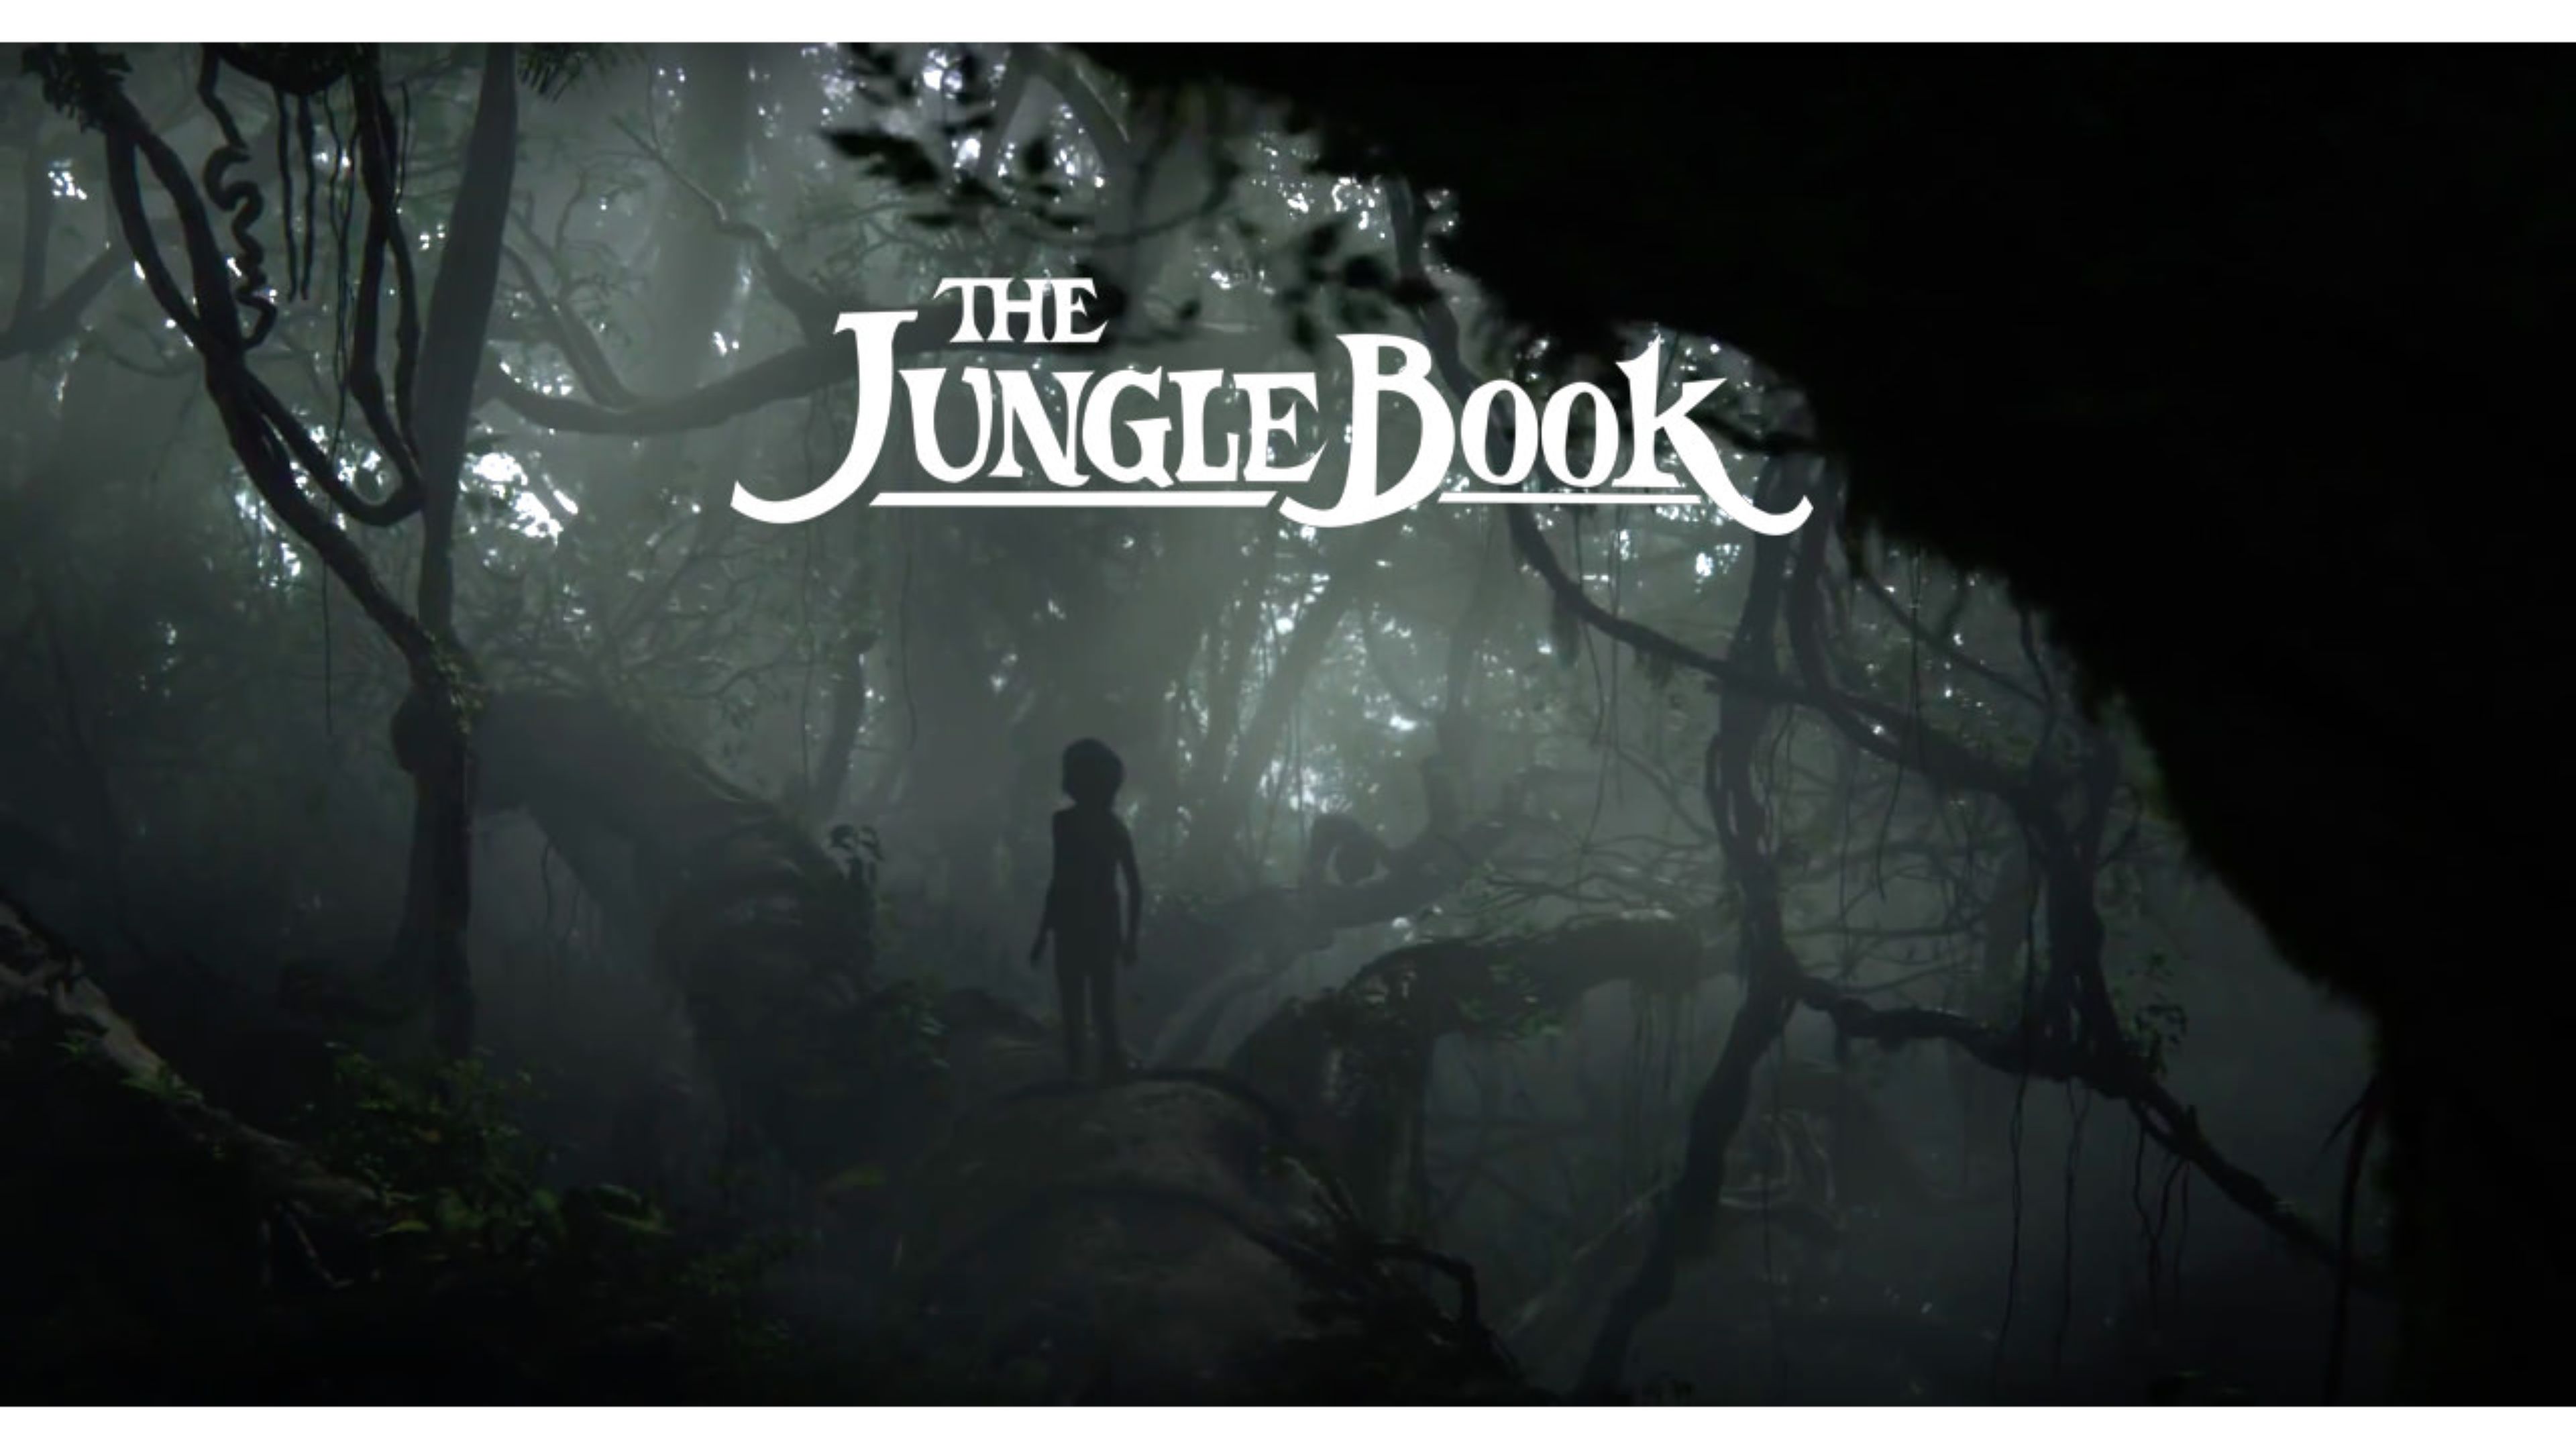 The Jungle Book Wallpaper 20   3840 X 2160 stmednet